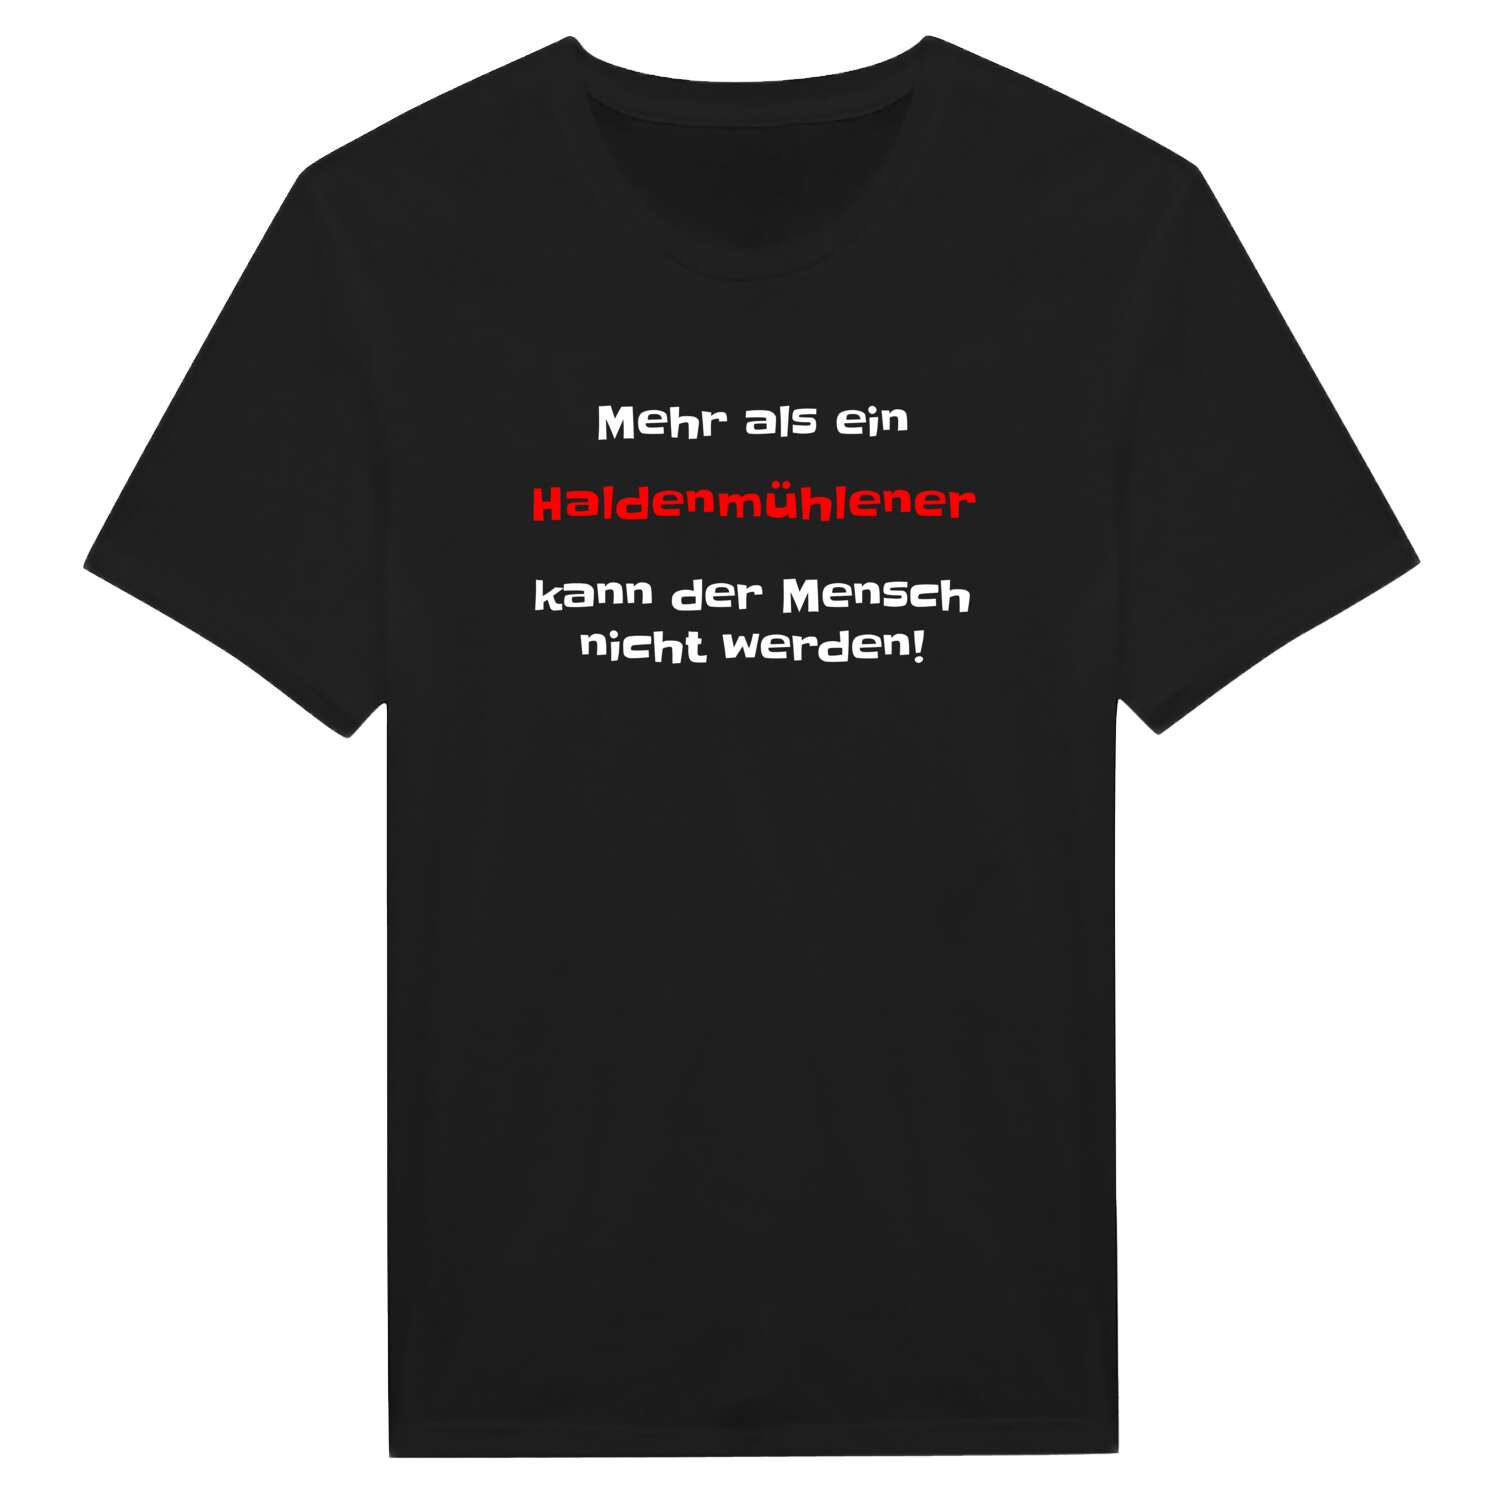 Haldenmühle T-Shirt »Mehr als ein«